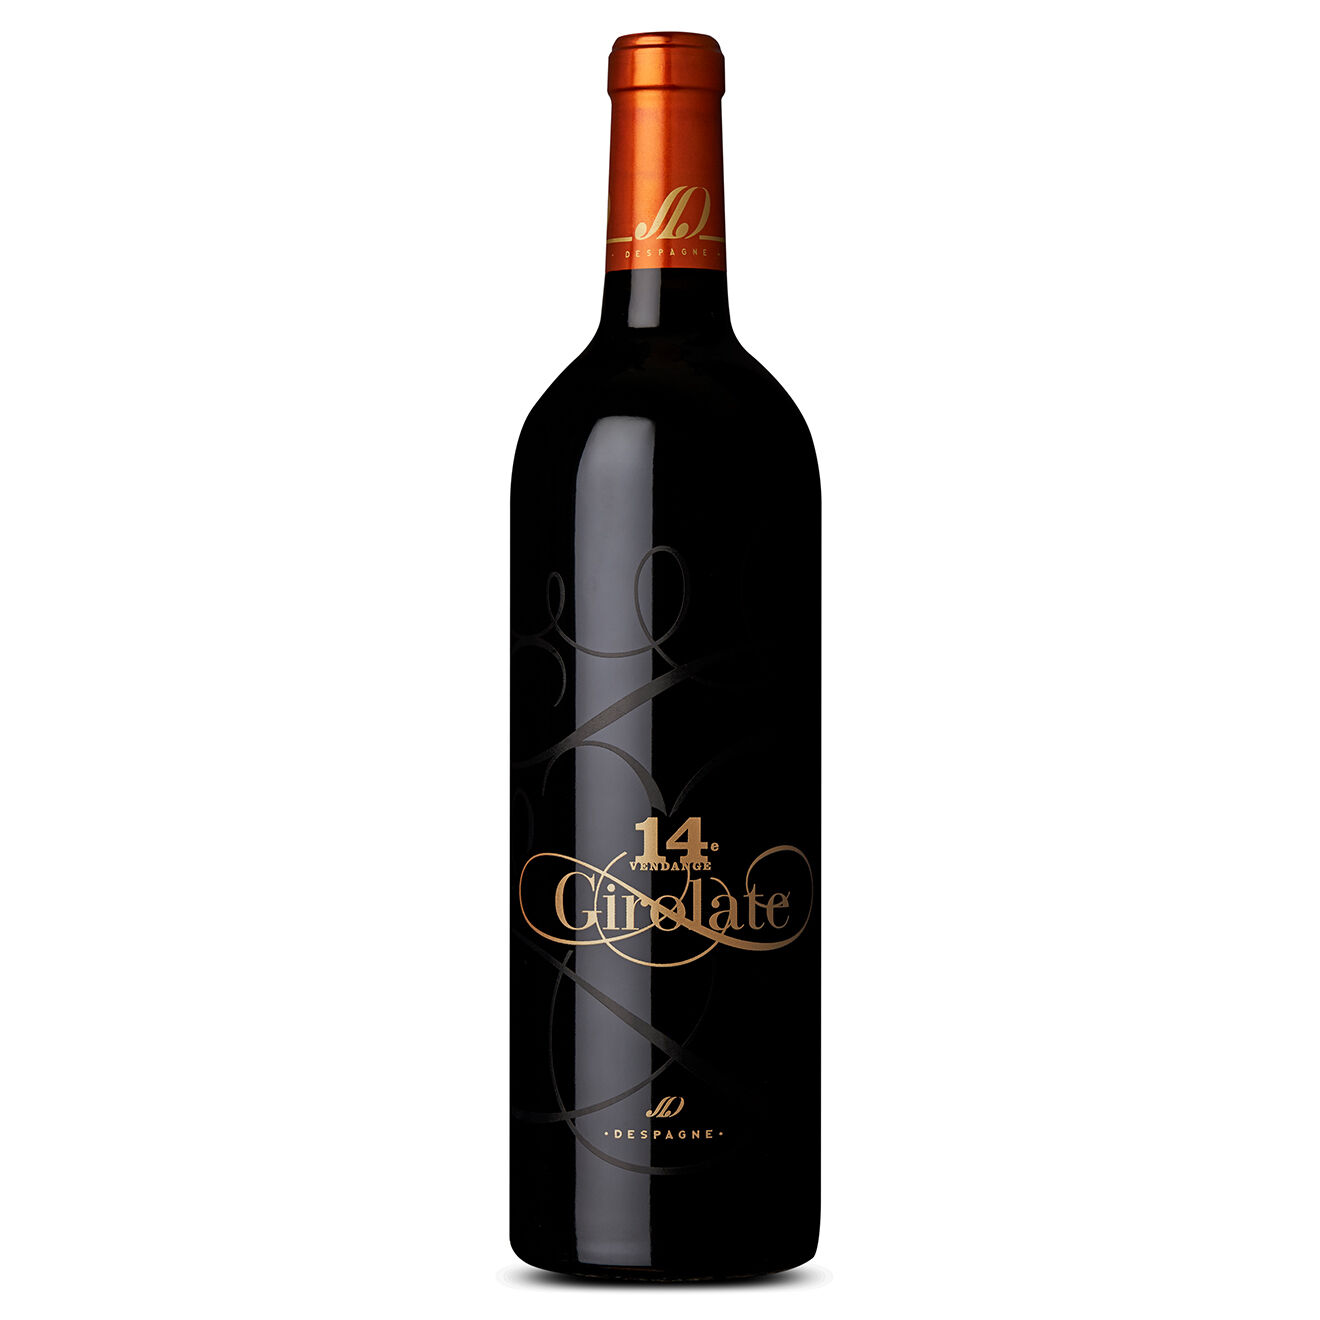 1 Bordeaux 2014 Girolate 75cl